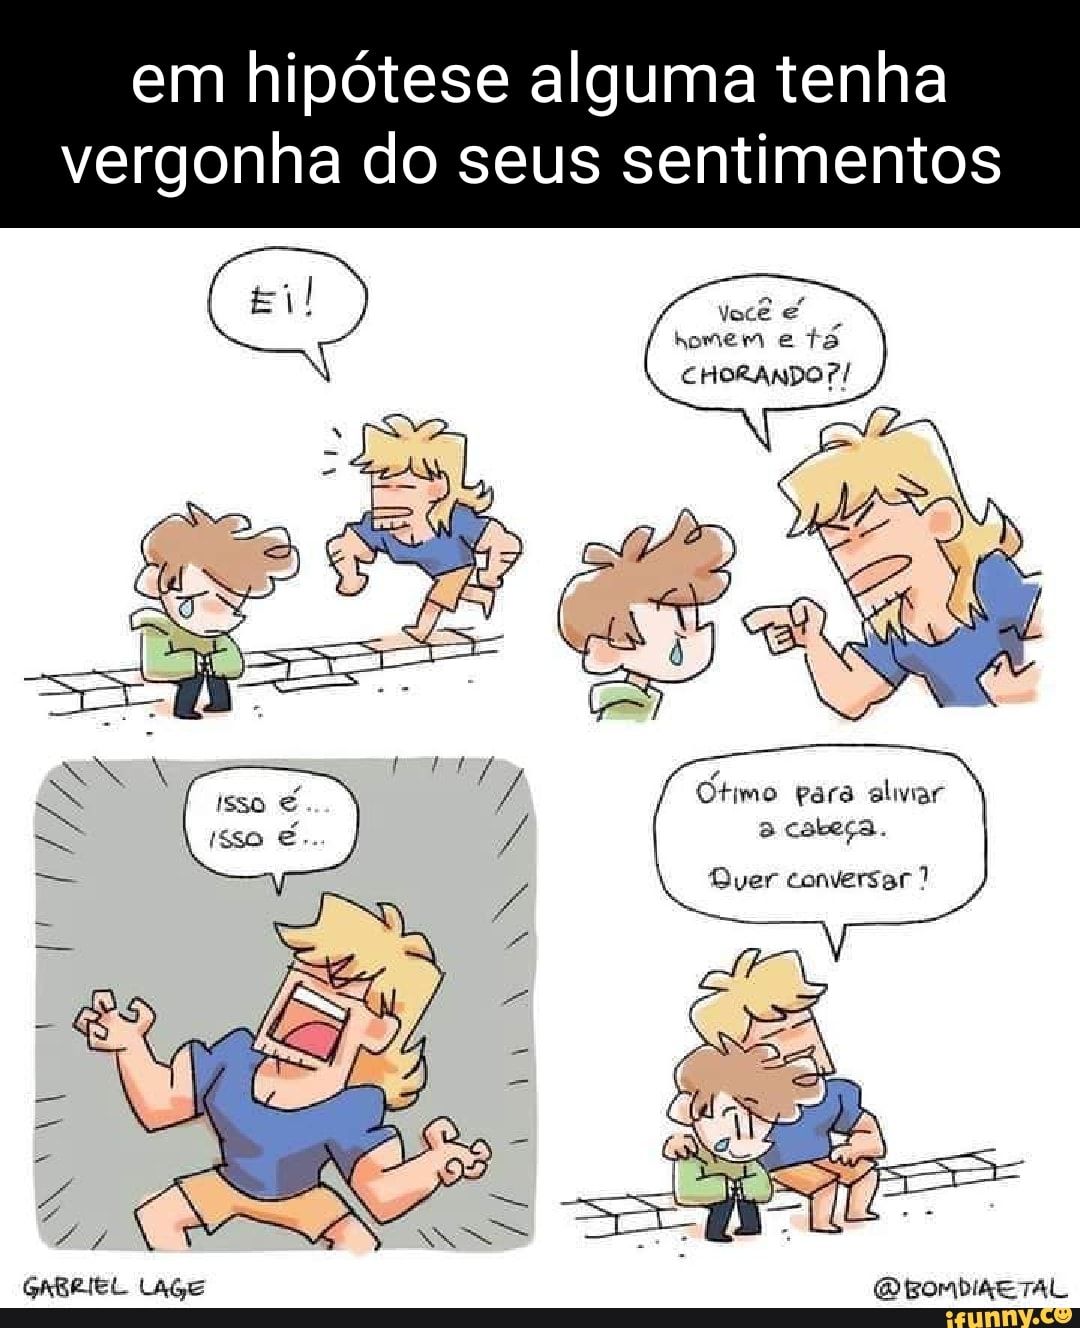 joguinho #triguinho #humor #satira #meme #status